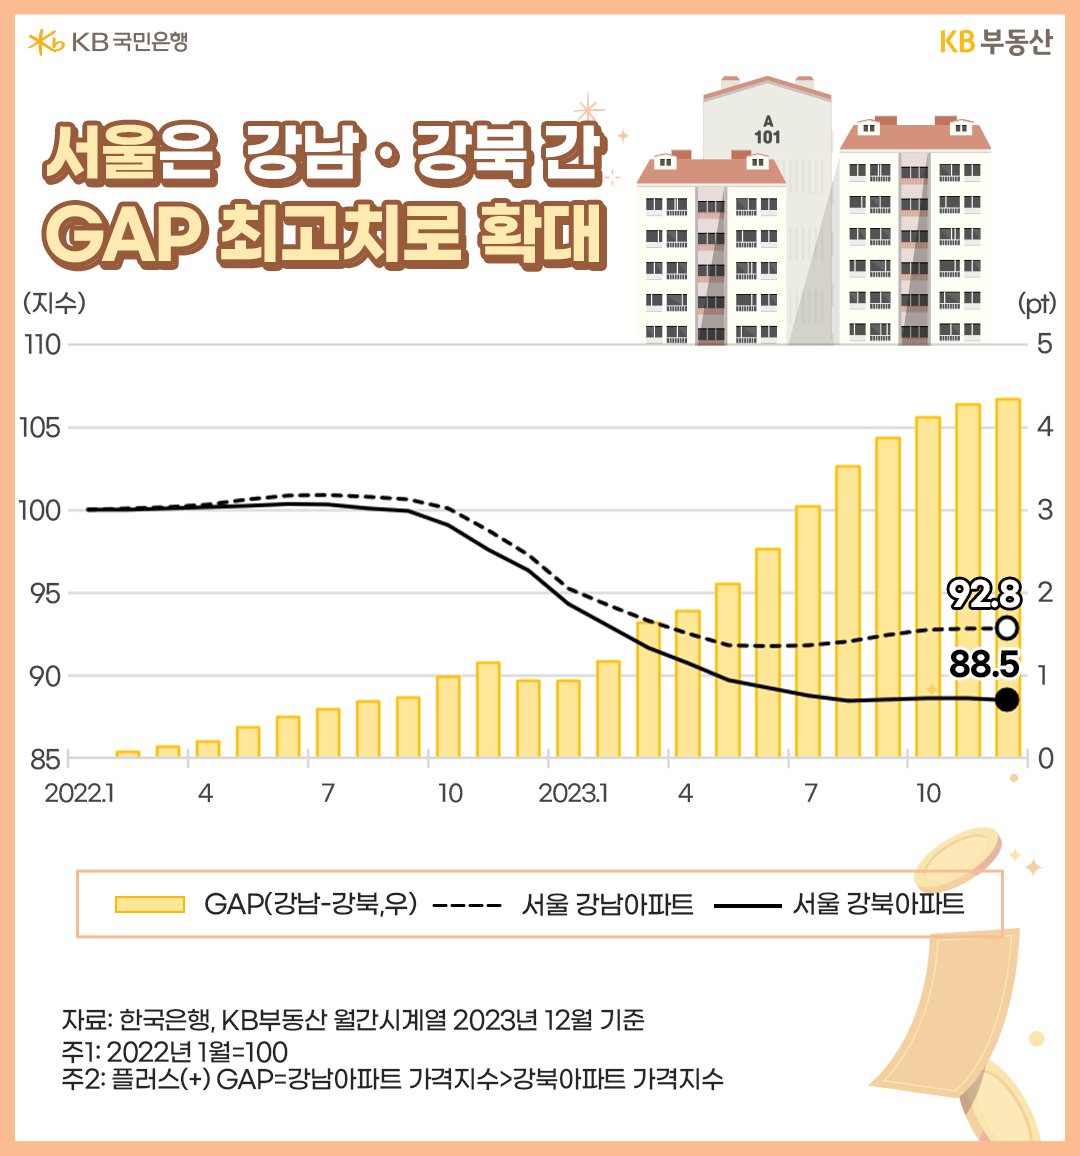 서울은 강남 강북 간 'GAP 최고치'로 확대를 보여주는 이미지 이다. 